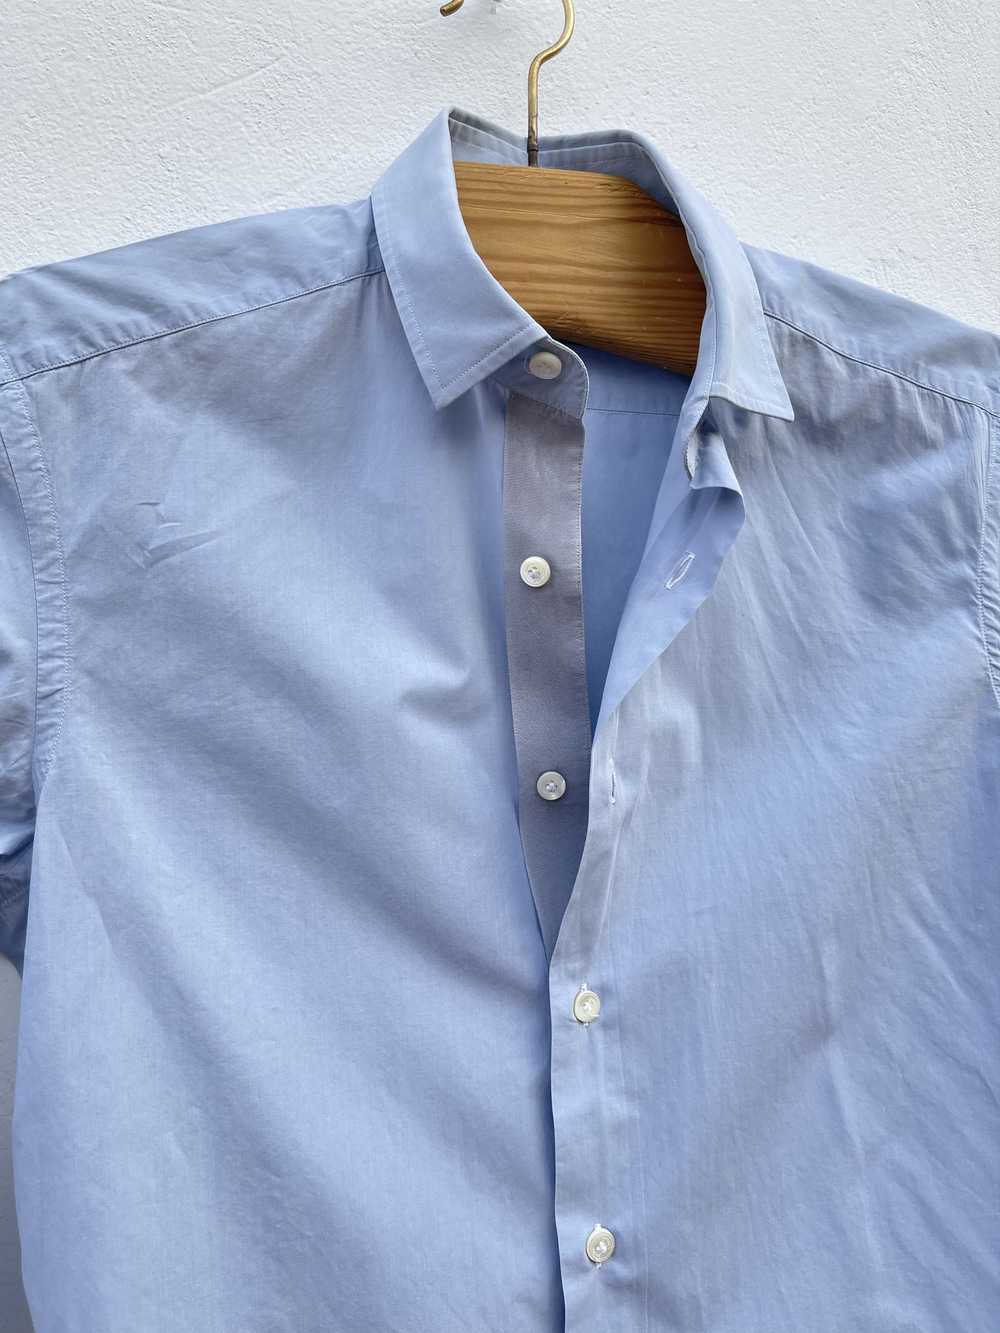 Lanvin 🔥 Lanvin Paris luxury shirt size Small co… - image 4